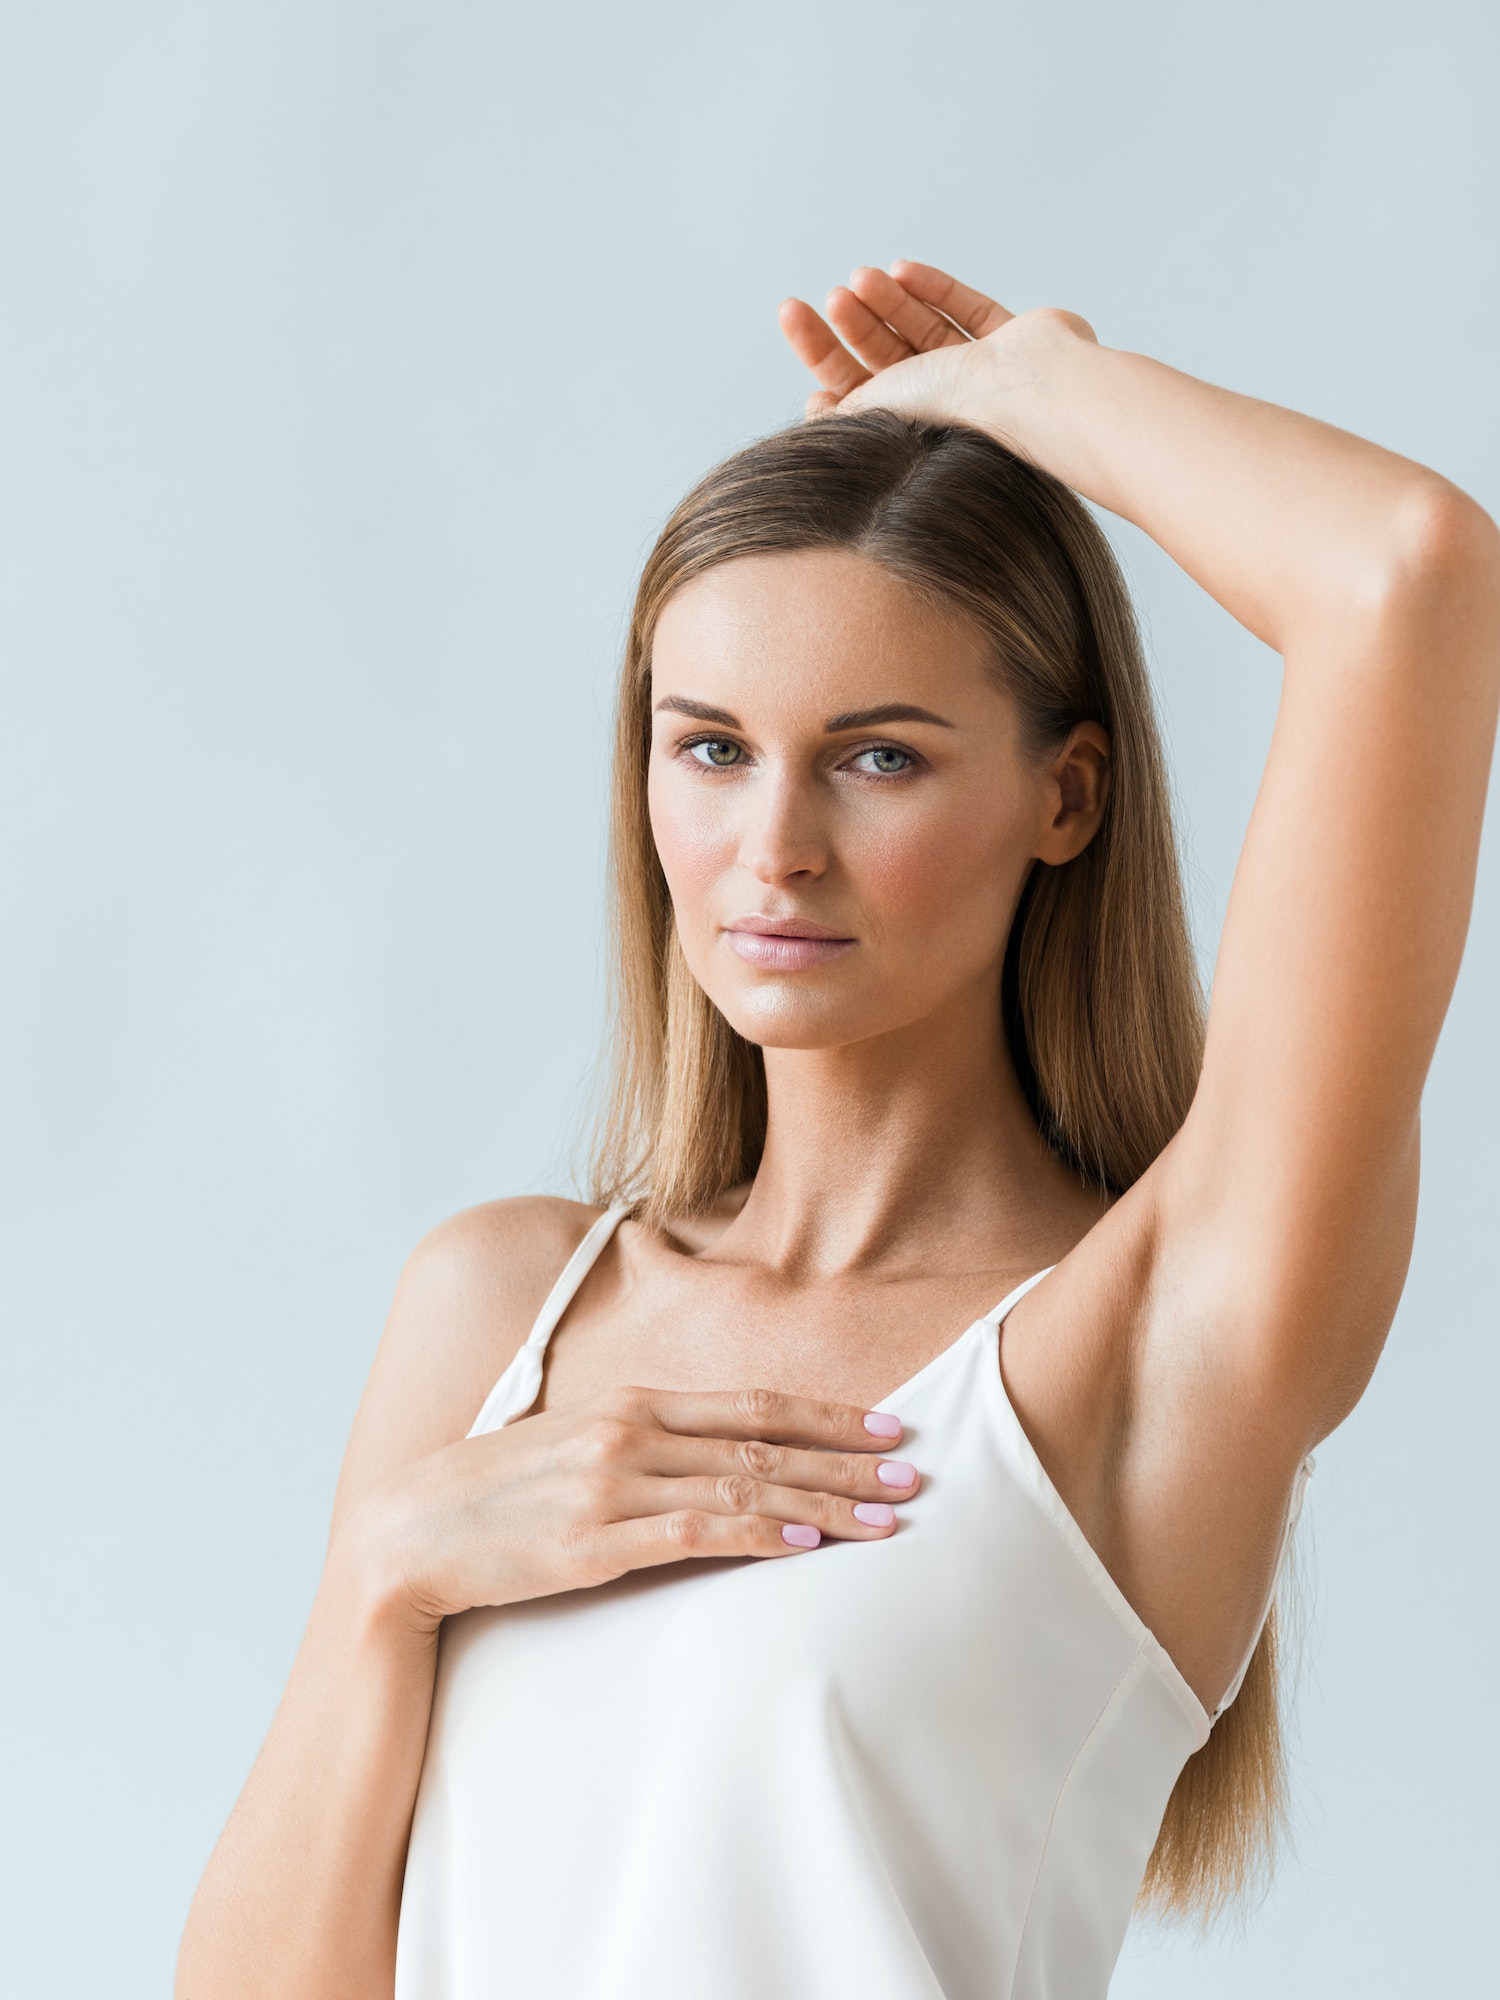 Armpit woman hand up epilation concept